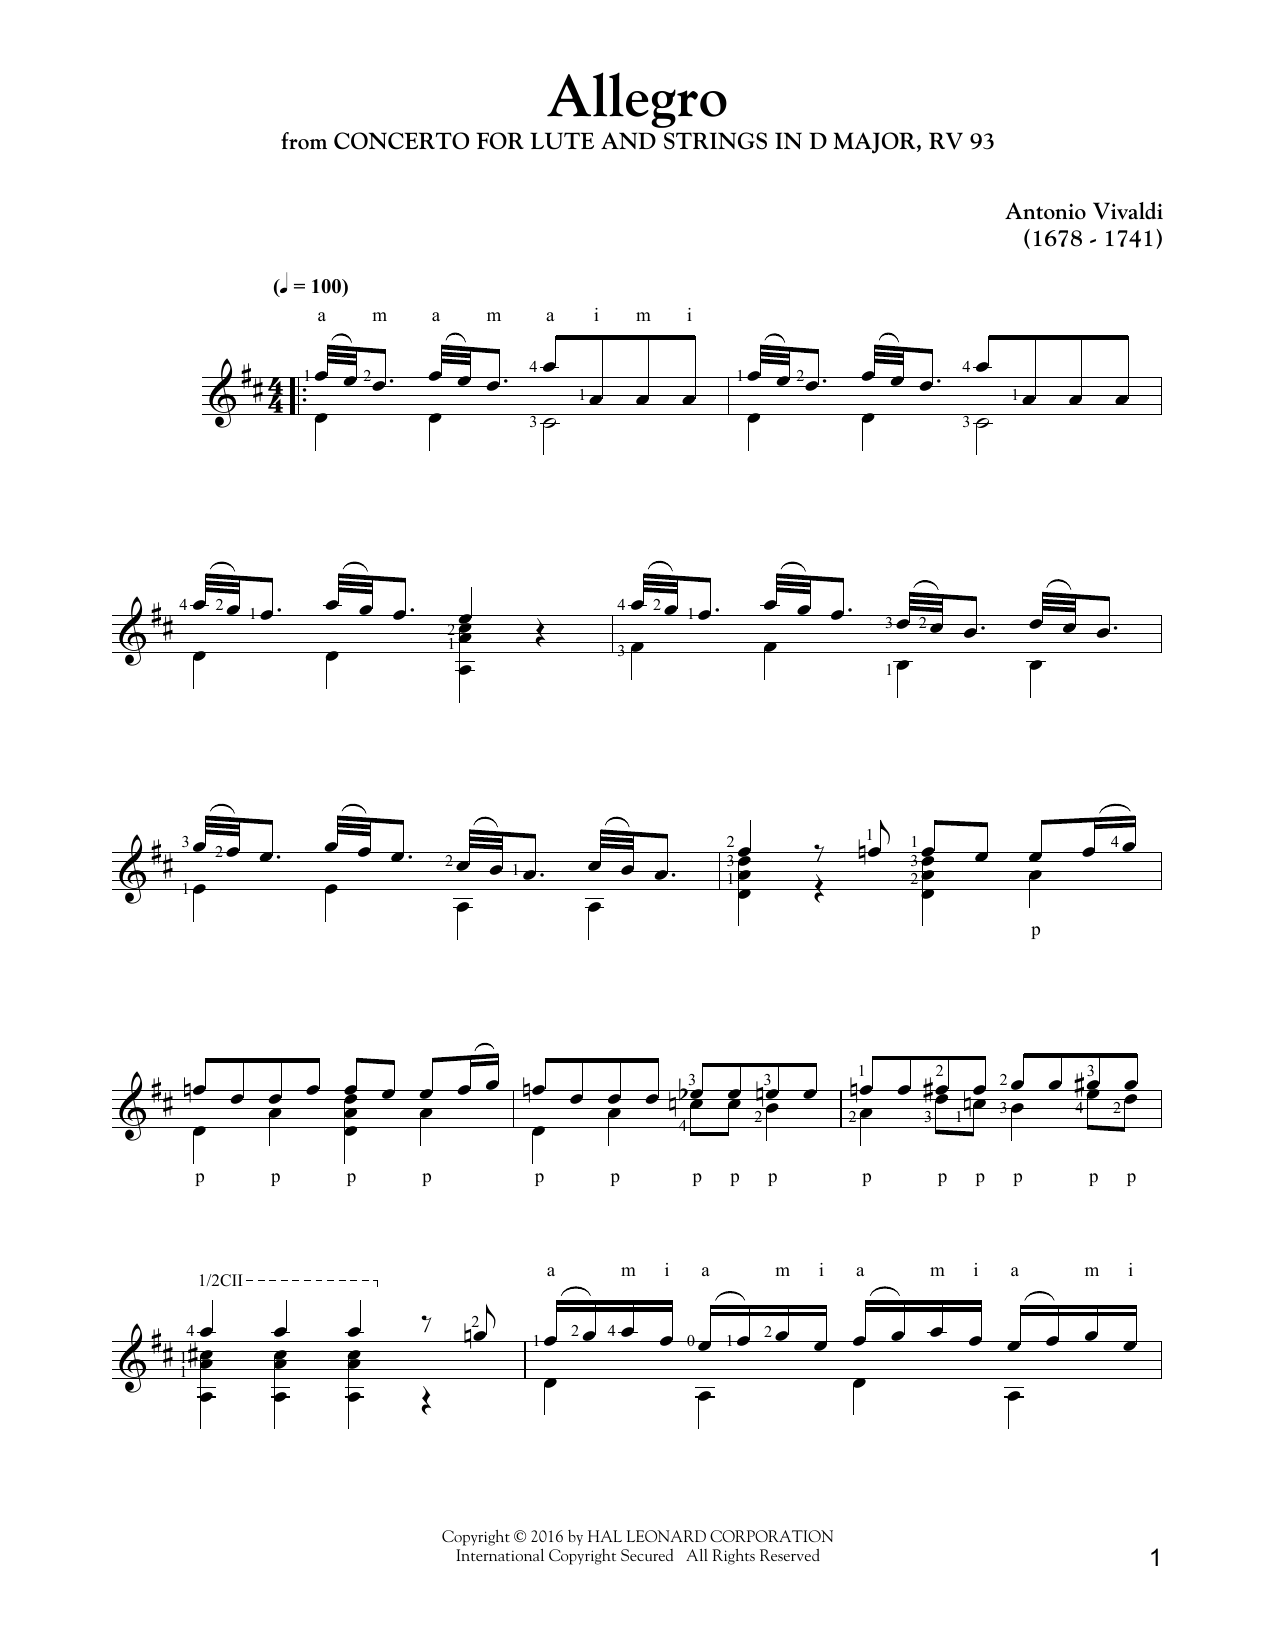 Download Antonio Vivaldi Concerto In D Major Sheet Music